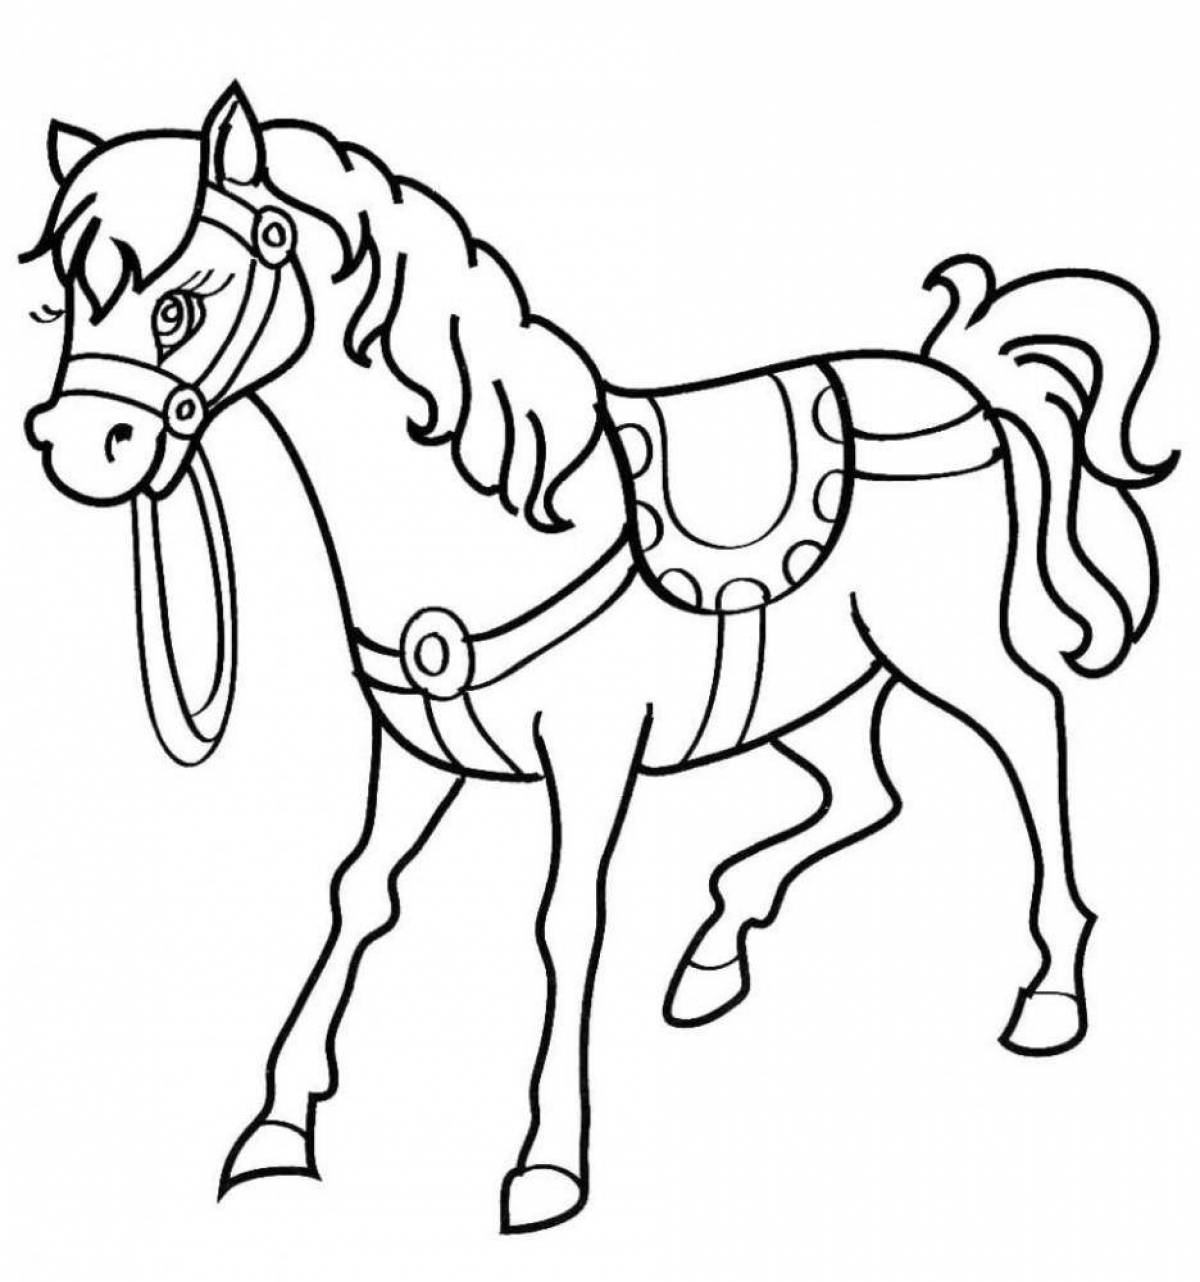 Радостная раскраска лошадь для детей 5-6 лет